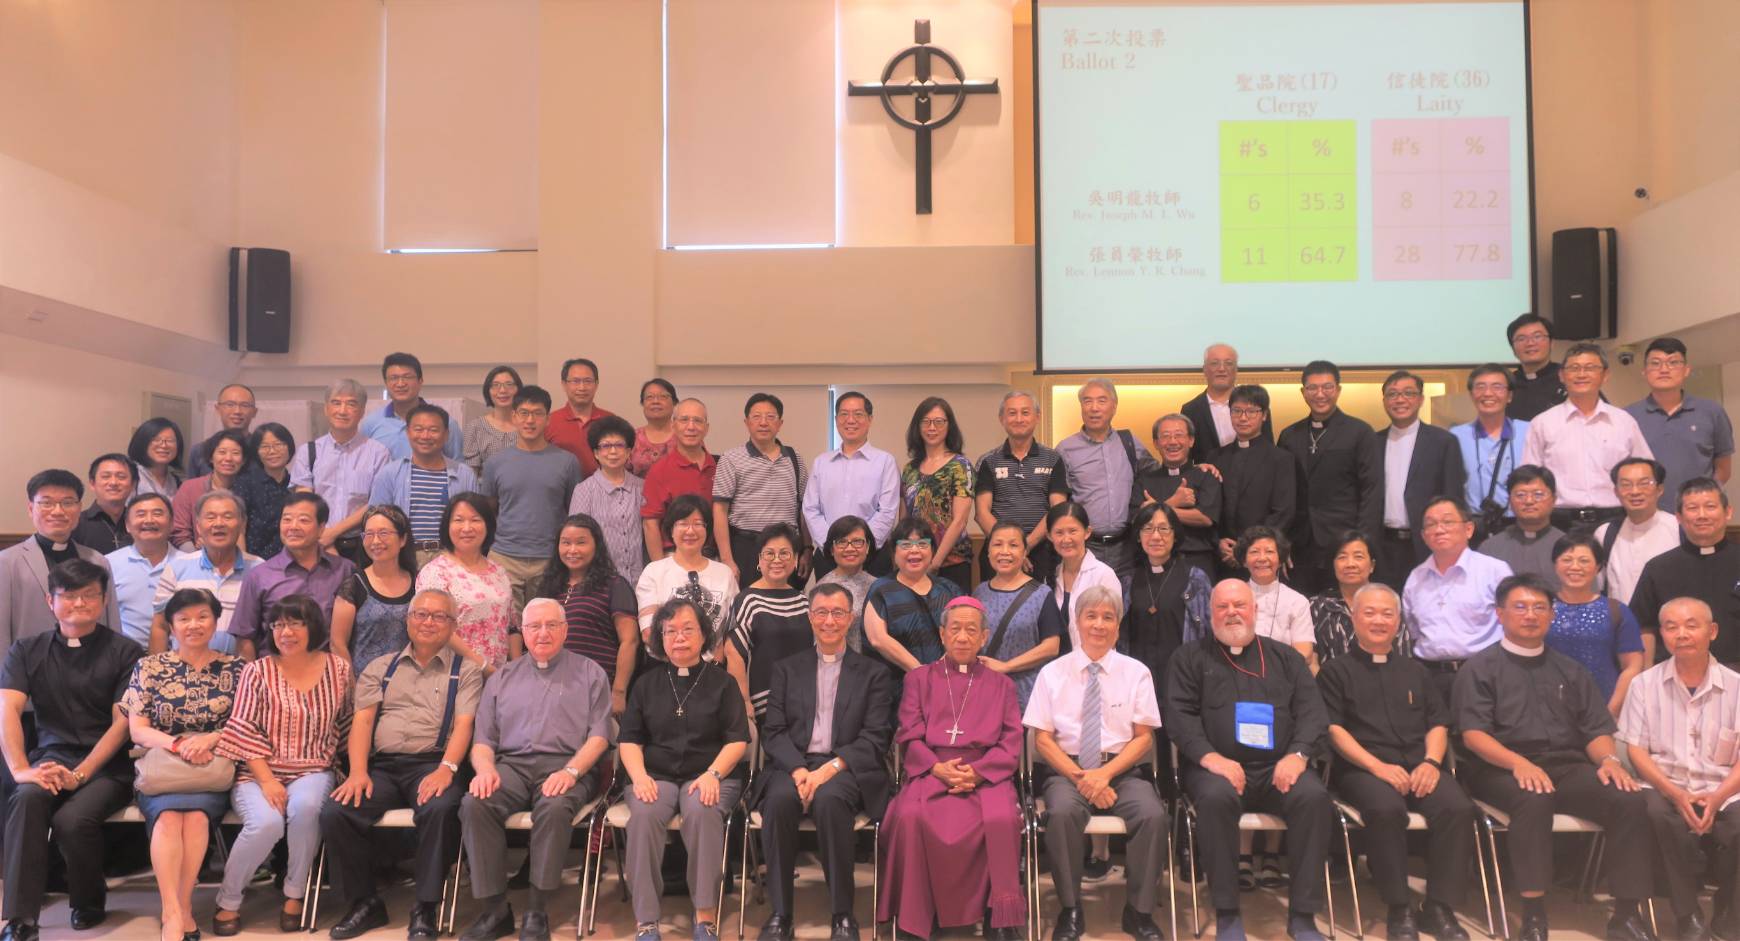 張員榮牧師當選台灣聖公會第六任繼任主教，預定明（2020）年2月22日由美國聖公會主席主教Michael Curry前來主持新主教祝聖暨升座聖禮